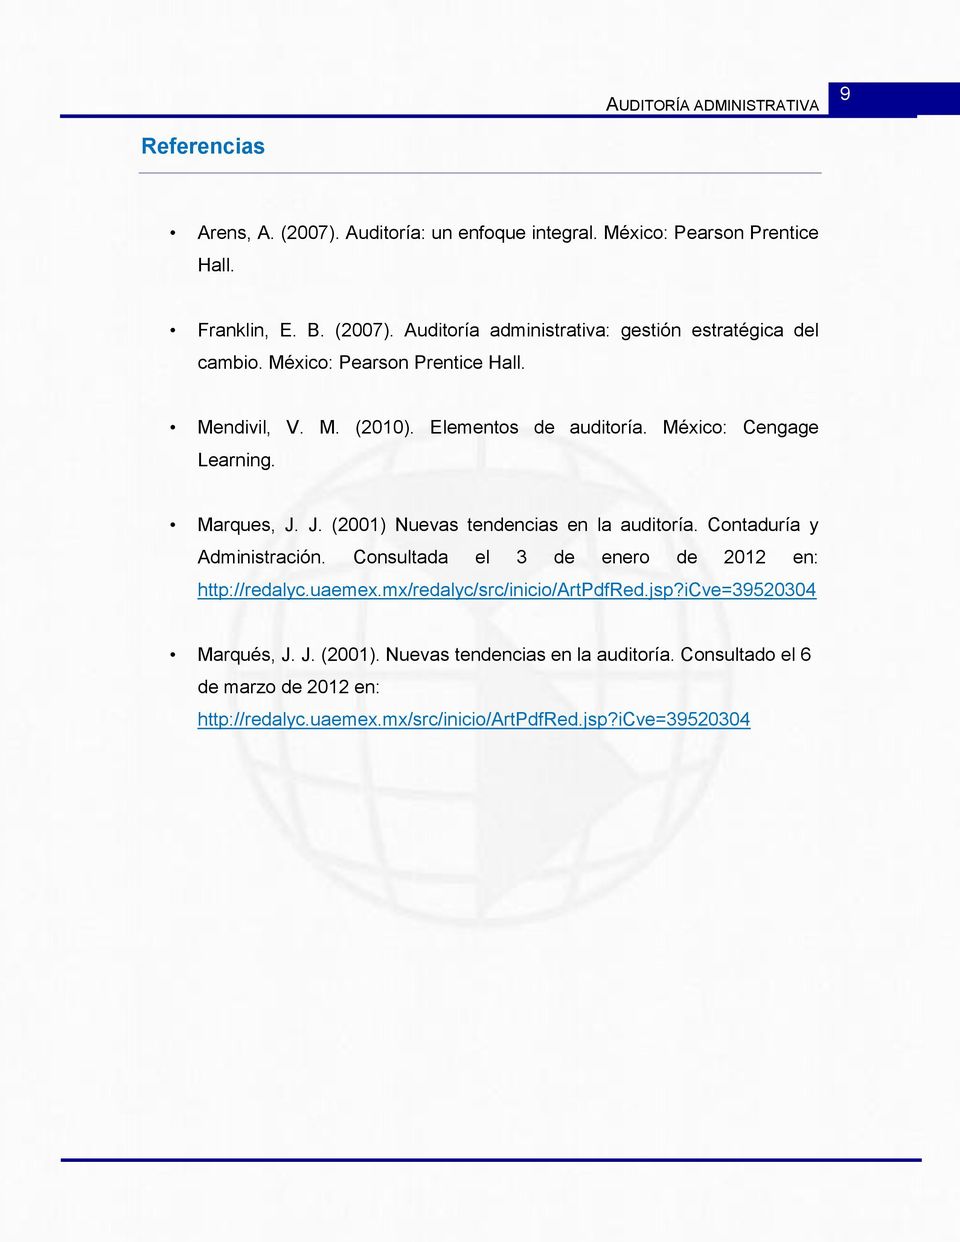 Contaduría y Administración. Consultada el 3 de enero de 2012 en: http://redalyc.uaemex.mx/redalyc/src/inicio/artpdfred.jsp?icve=39520304 Marqués, J. J. (2001).